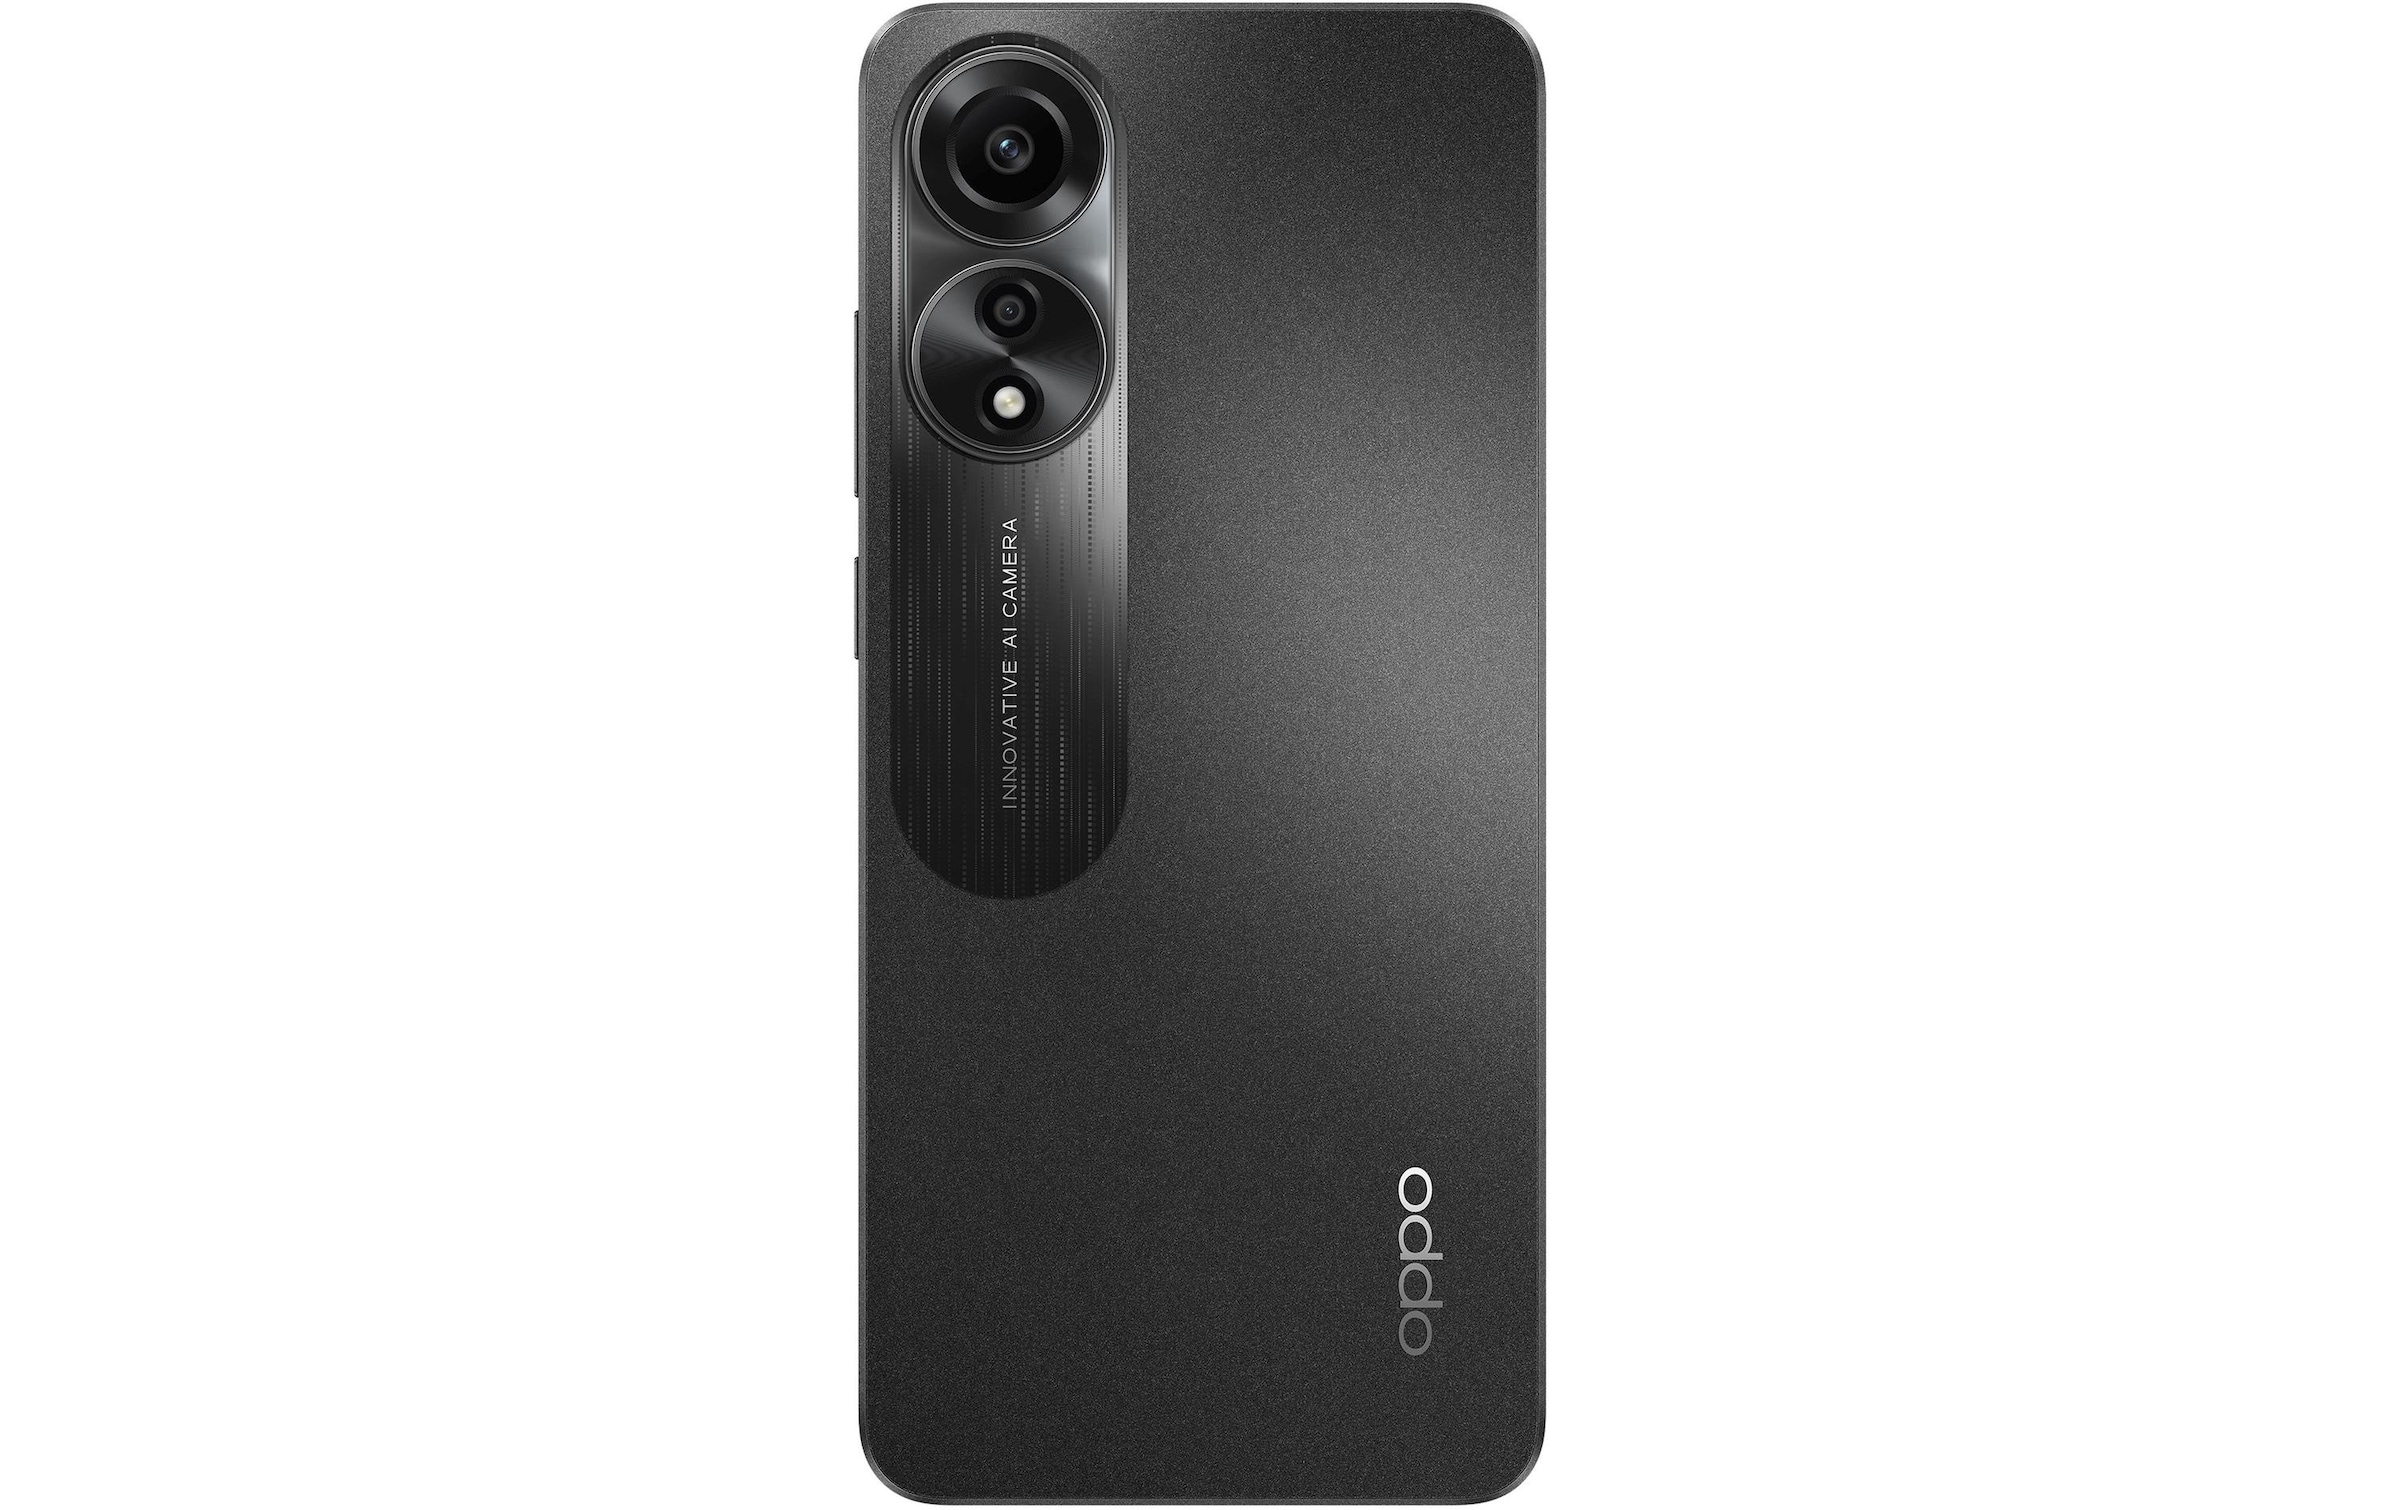 Oppo Smartphone »A78 Mist Black«, Schwarz, 16,26 cm/6,43 Zoll, 128 GB Speicherplatz, 50 MP Kamera